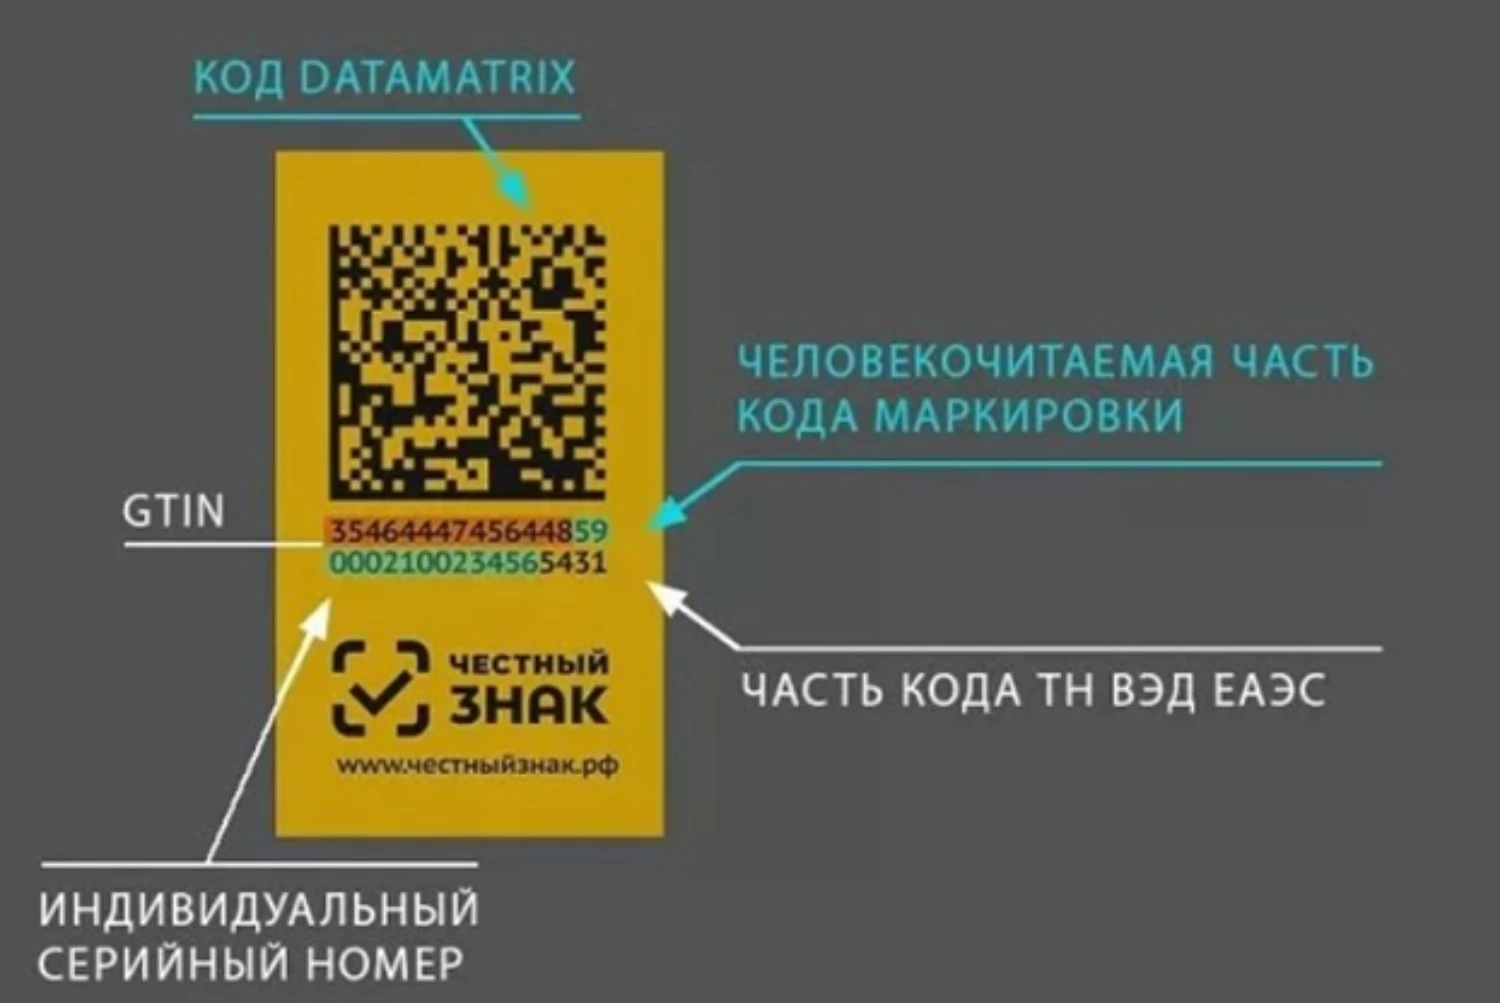 Qr код сигарет. Data Matrix коды. Пример кода маркировки. Код маркировки DATAMATRIX. Маркировка честный знак.